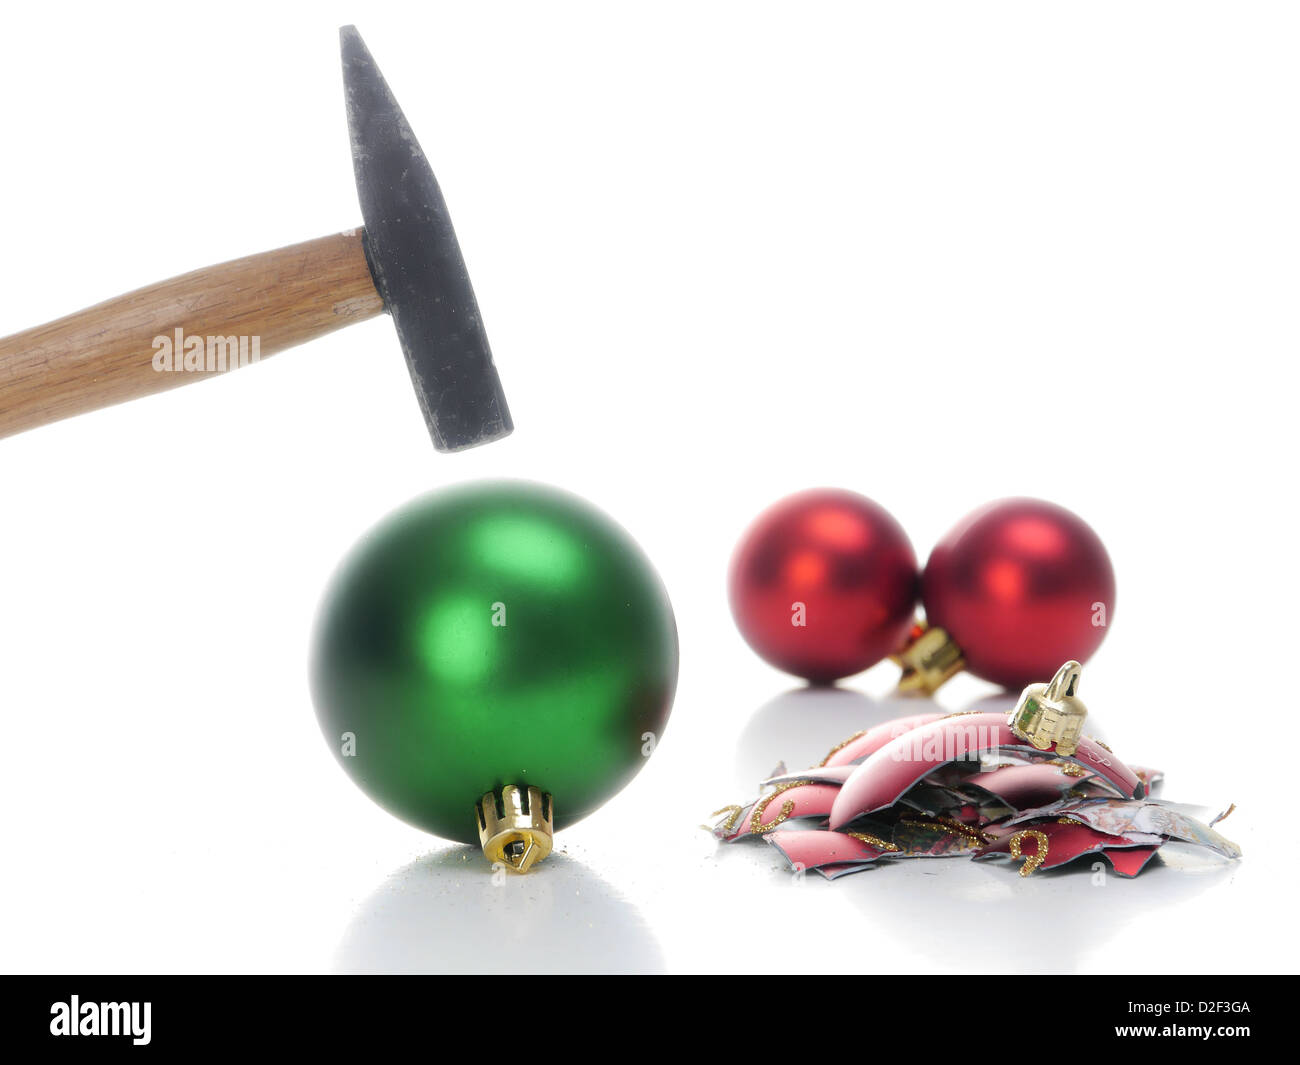 Hammer hitting boule de noël le casser en morceaux - Concept représentant l'aversion pour fêter les vacances de Noël Banque D'Images